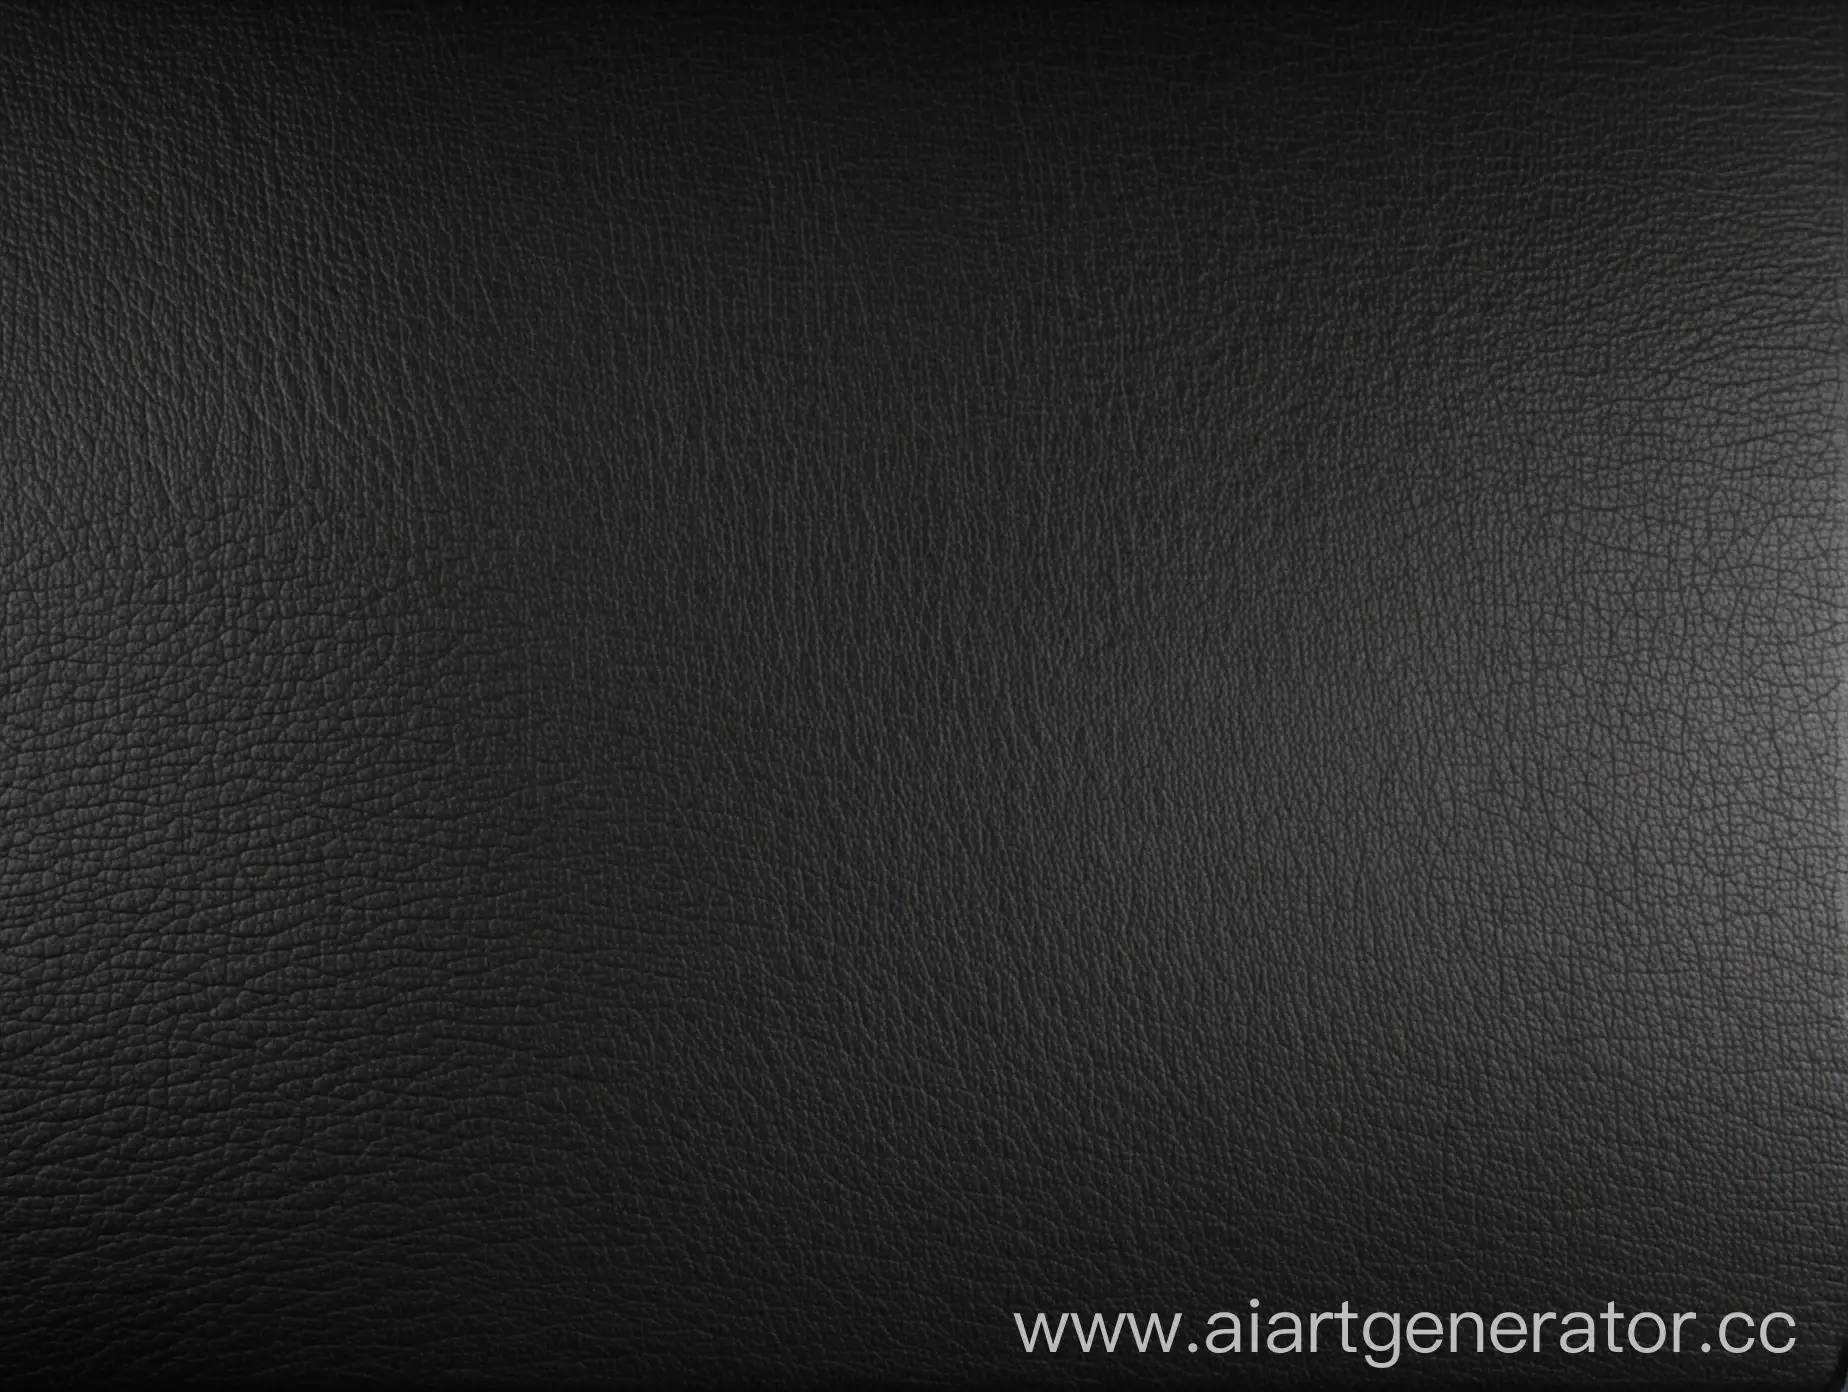 Лист формата 4, синтез текстур матового черного титана, графита, градиентного карбона и черной матовой кожи